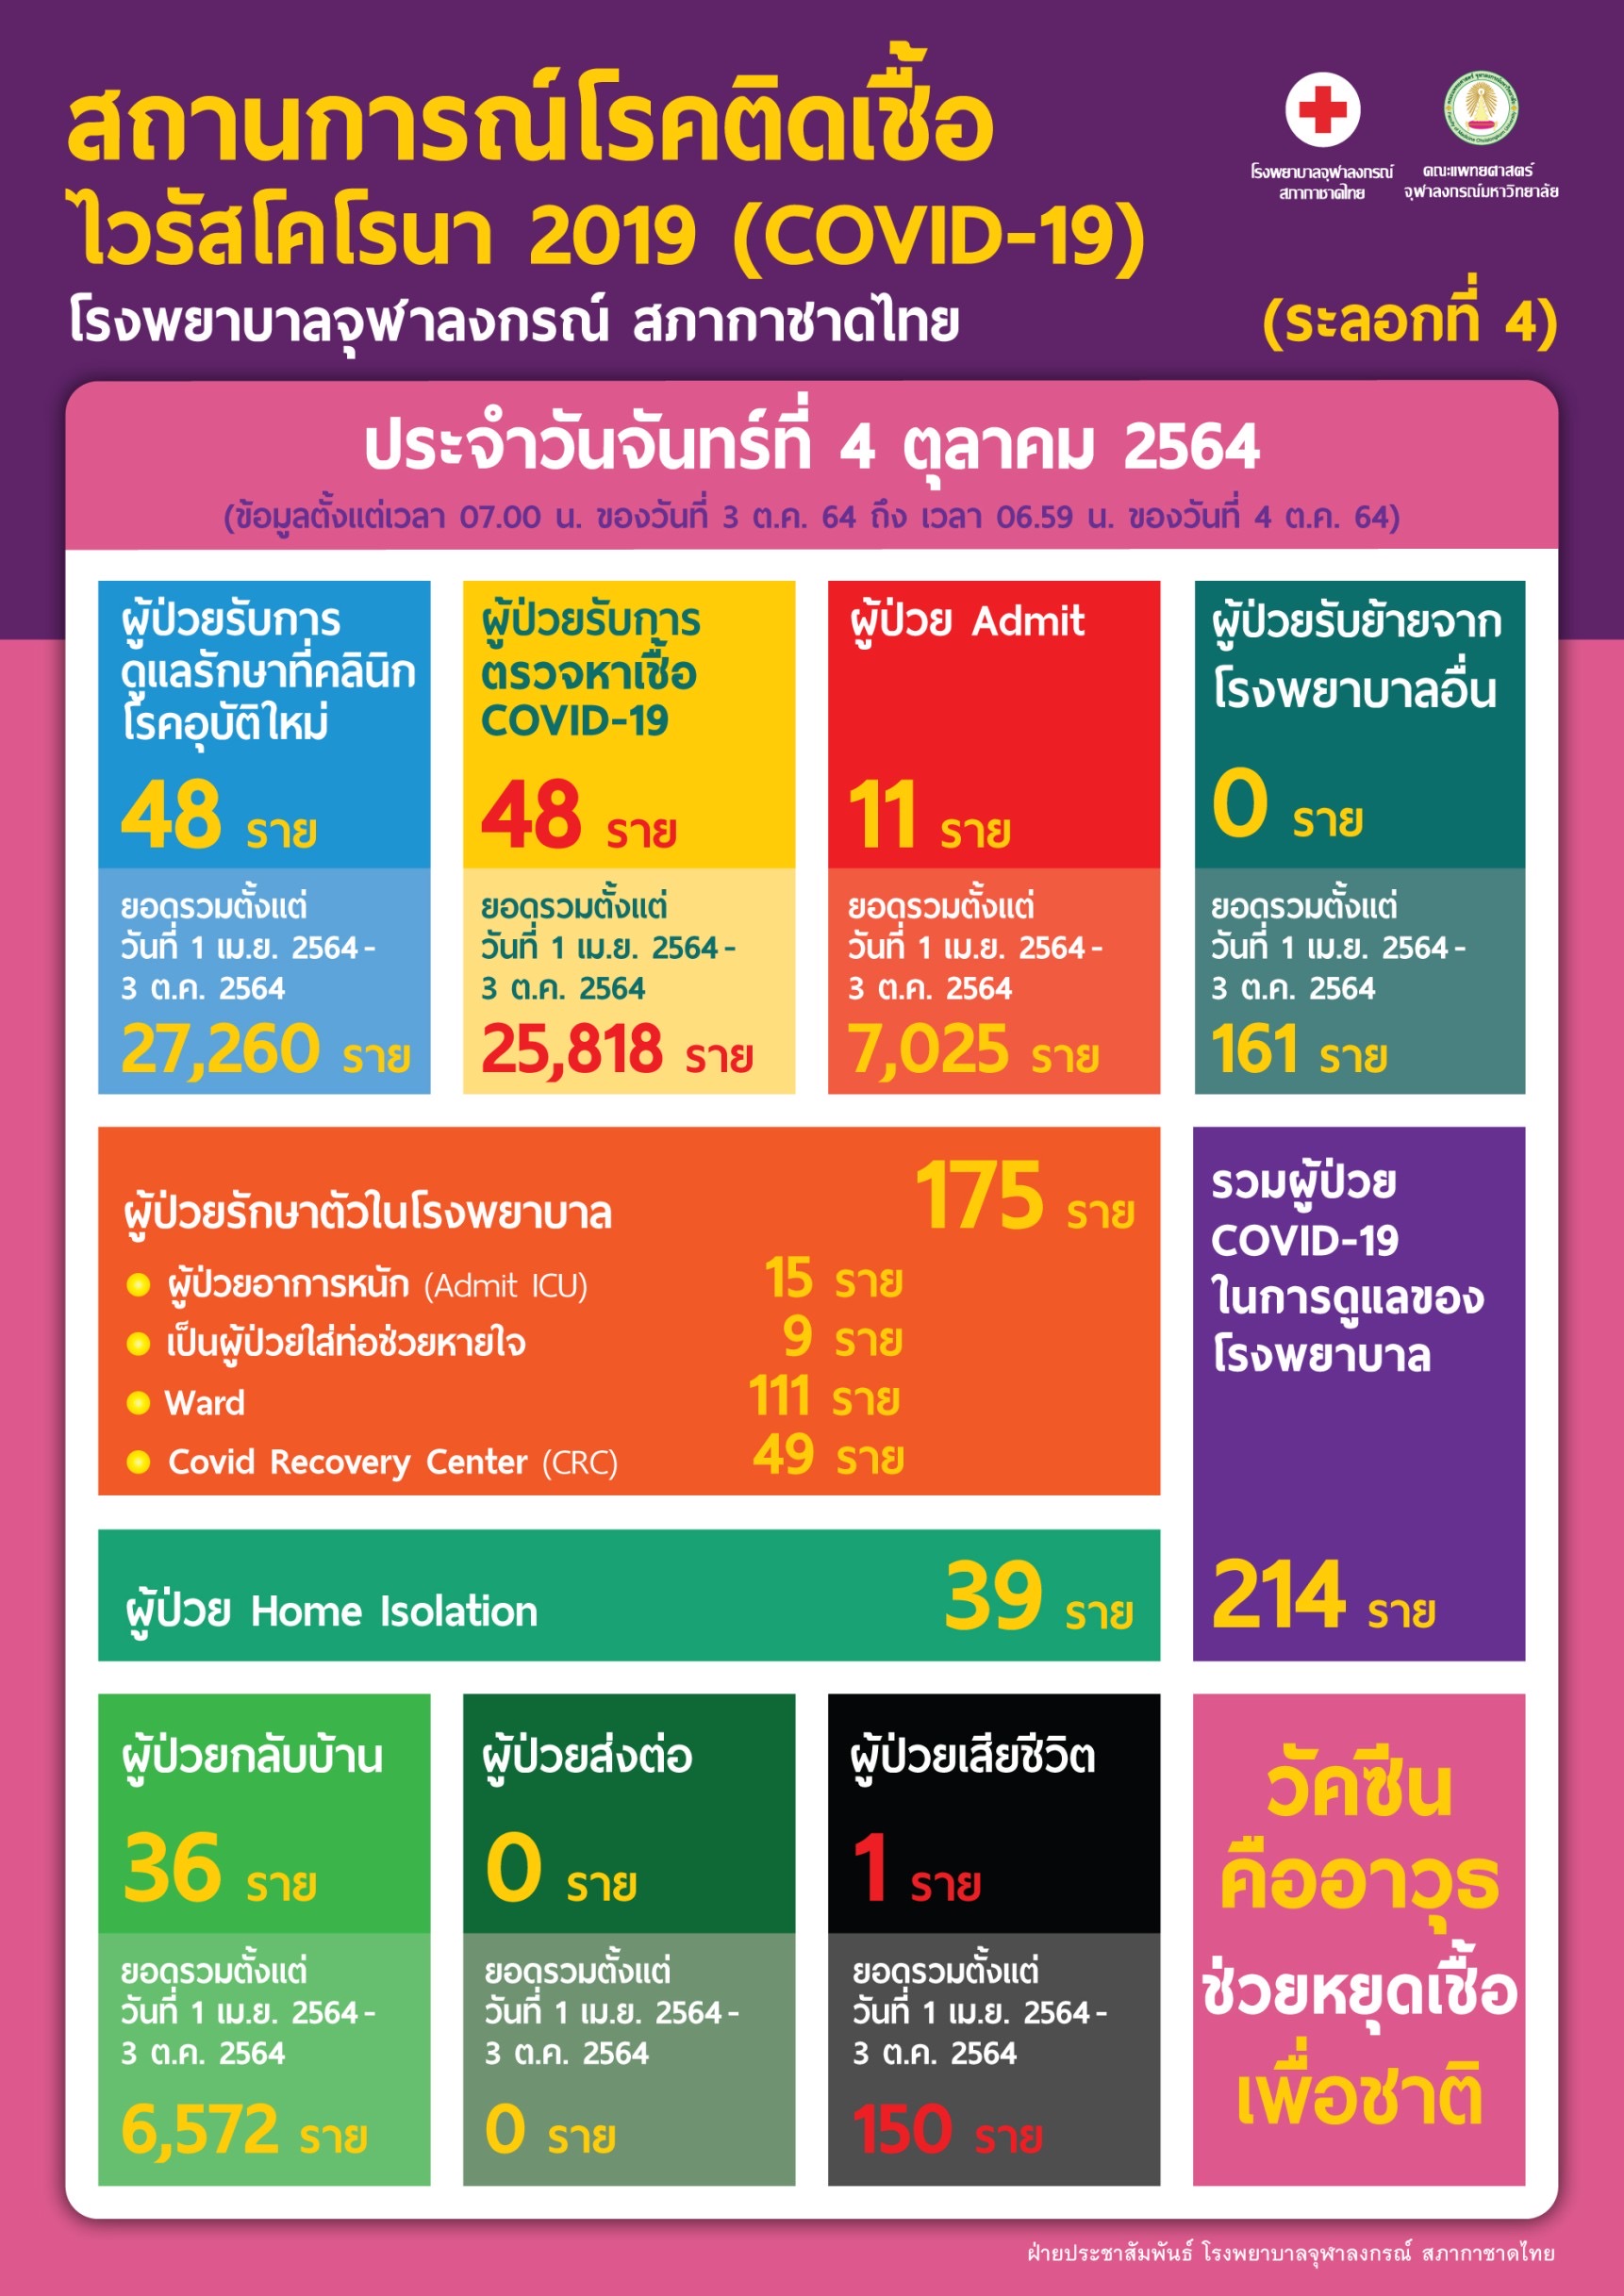 สถานการณ์โรคติดเชื้อไวรัสโคโรนา 2019 (COVID-19) (ระลอกที่ 4) โรงพยาบาลจุฬาลงกรณ์ สภากาชาดไทย ประจำวันจันทร์ที่ 4 ตุลาคม 2564